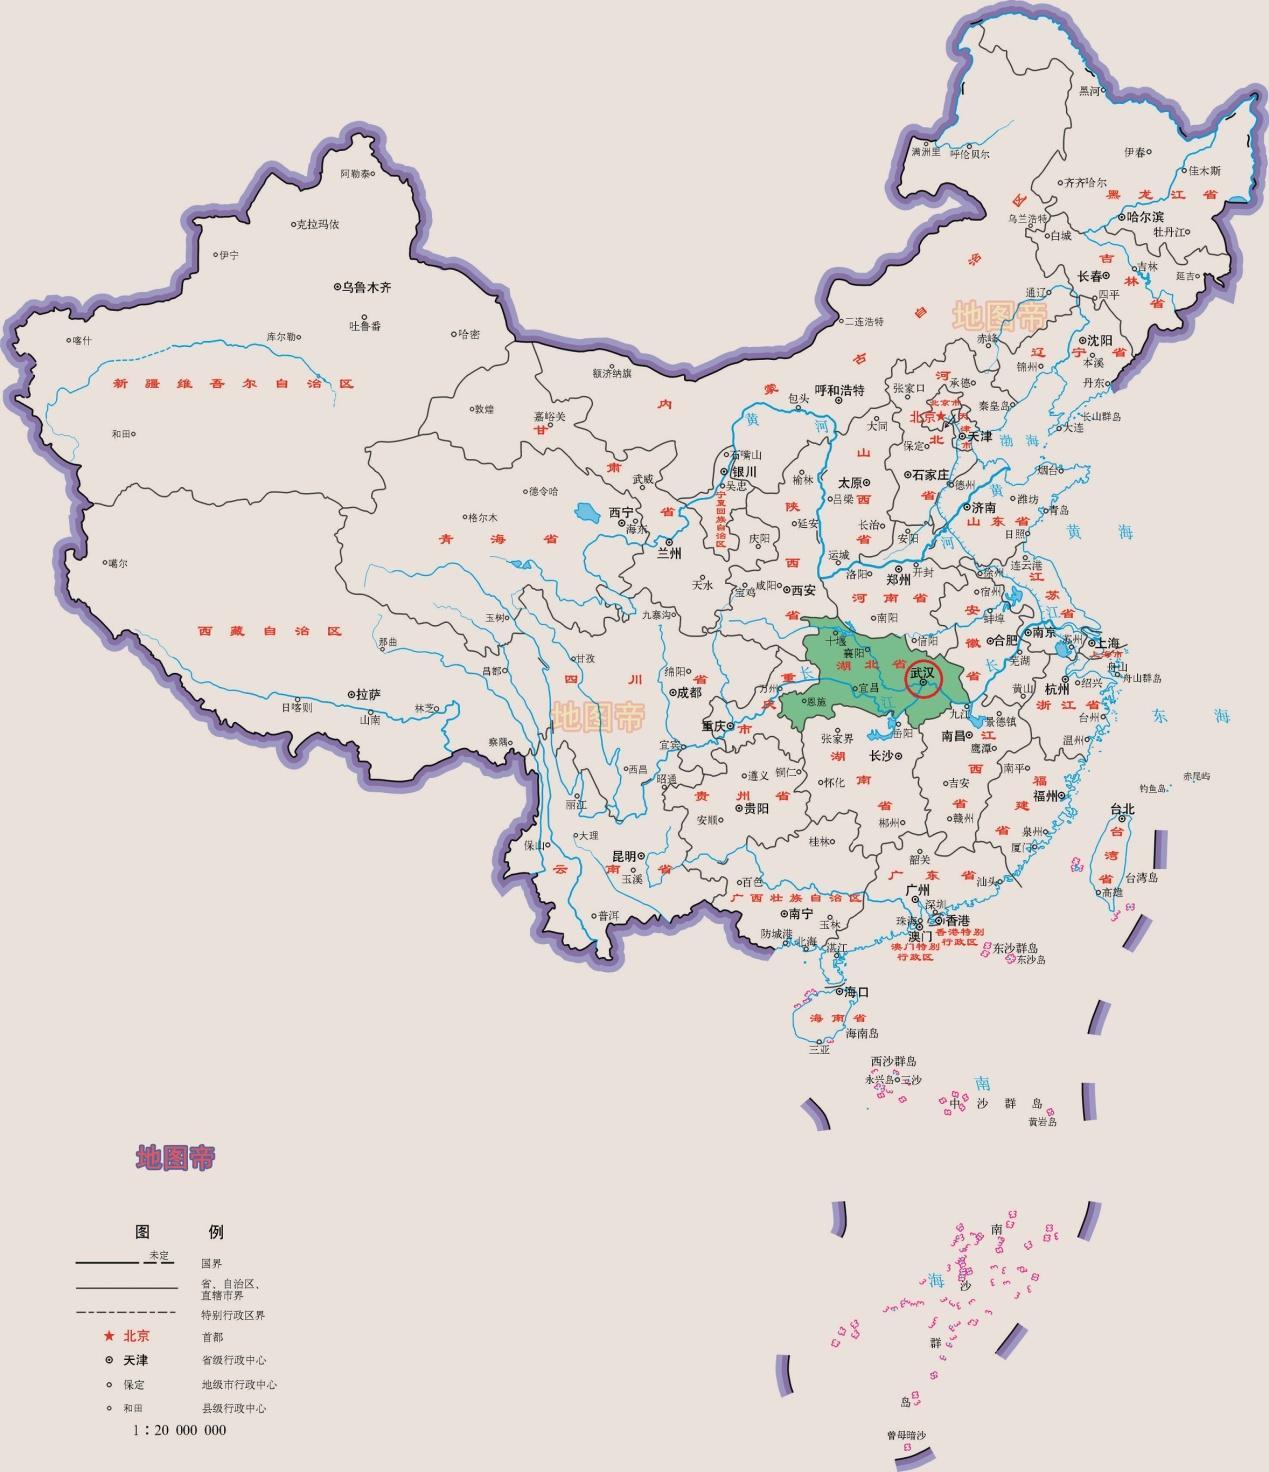 从地理位置上看,历史上武汉有多重要?